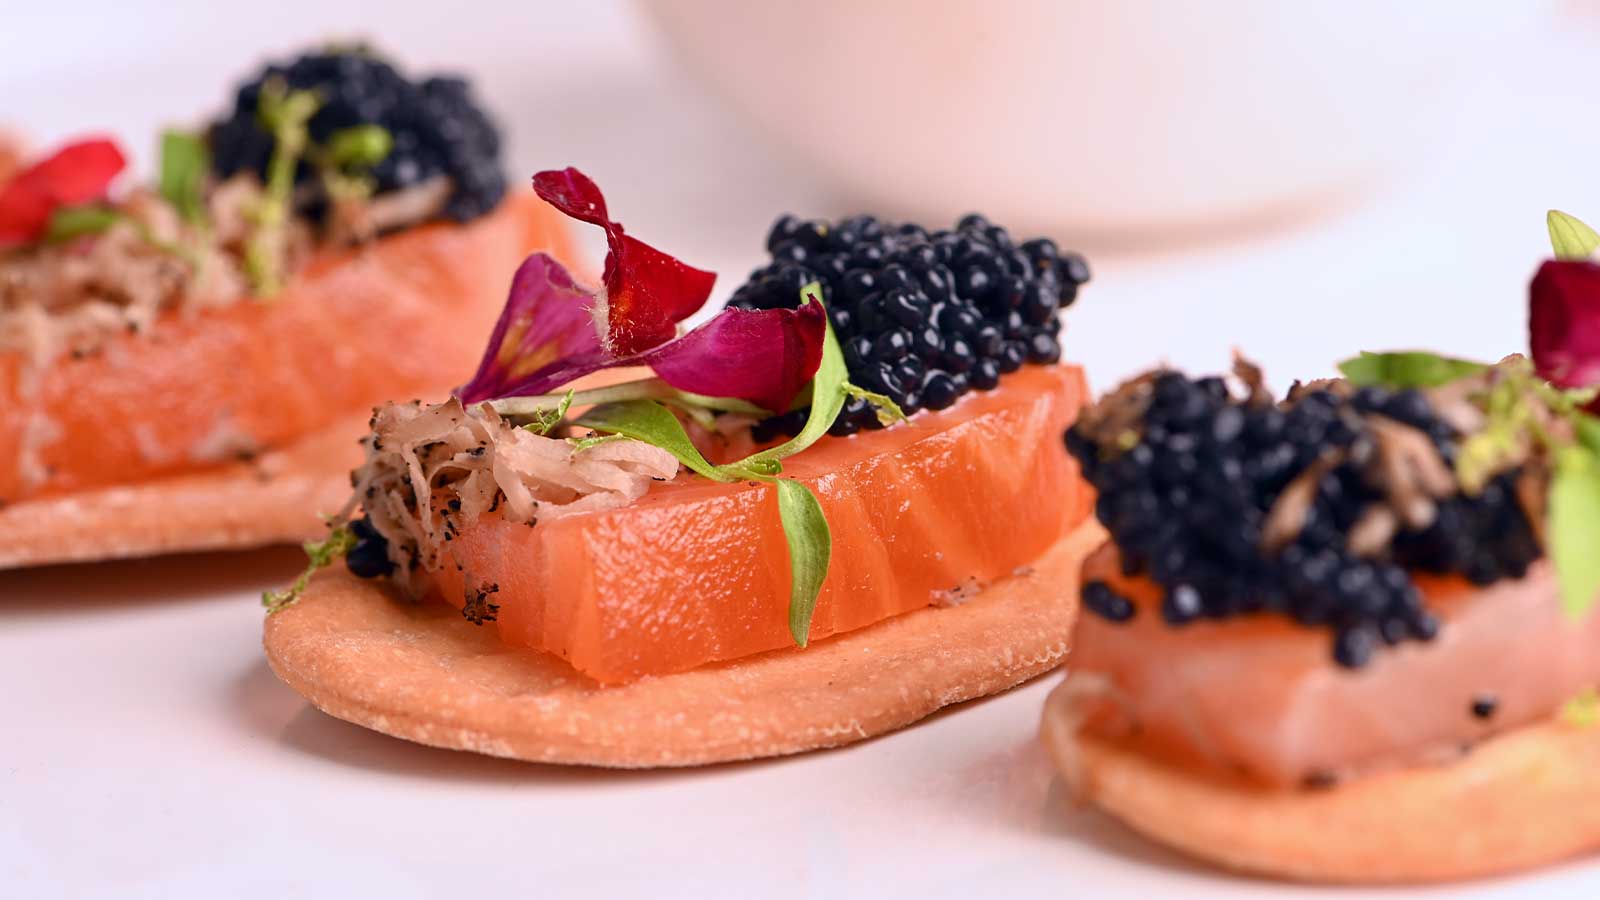 Sashimi de salmón ahumado, trufa y caviar #SalmónNoruego - Canal Cocina